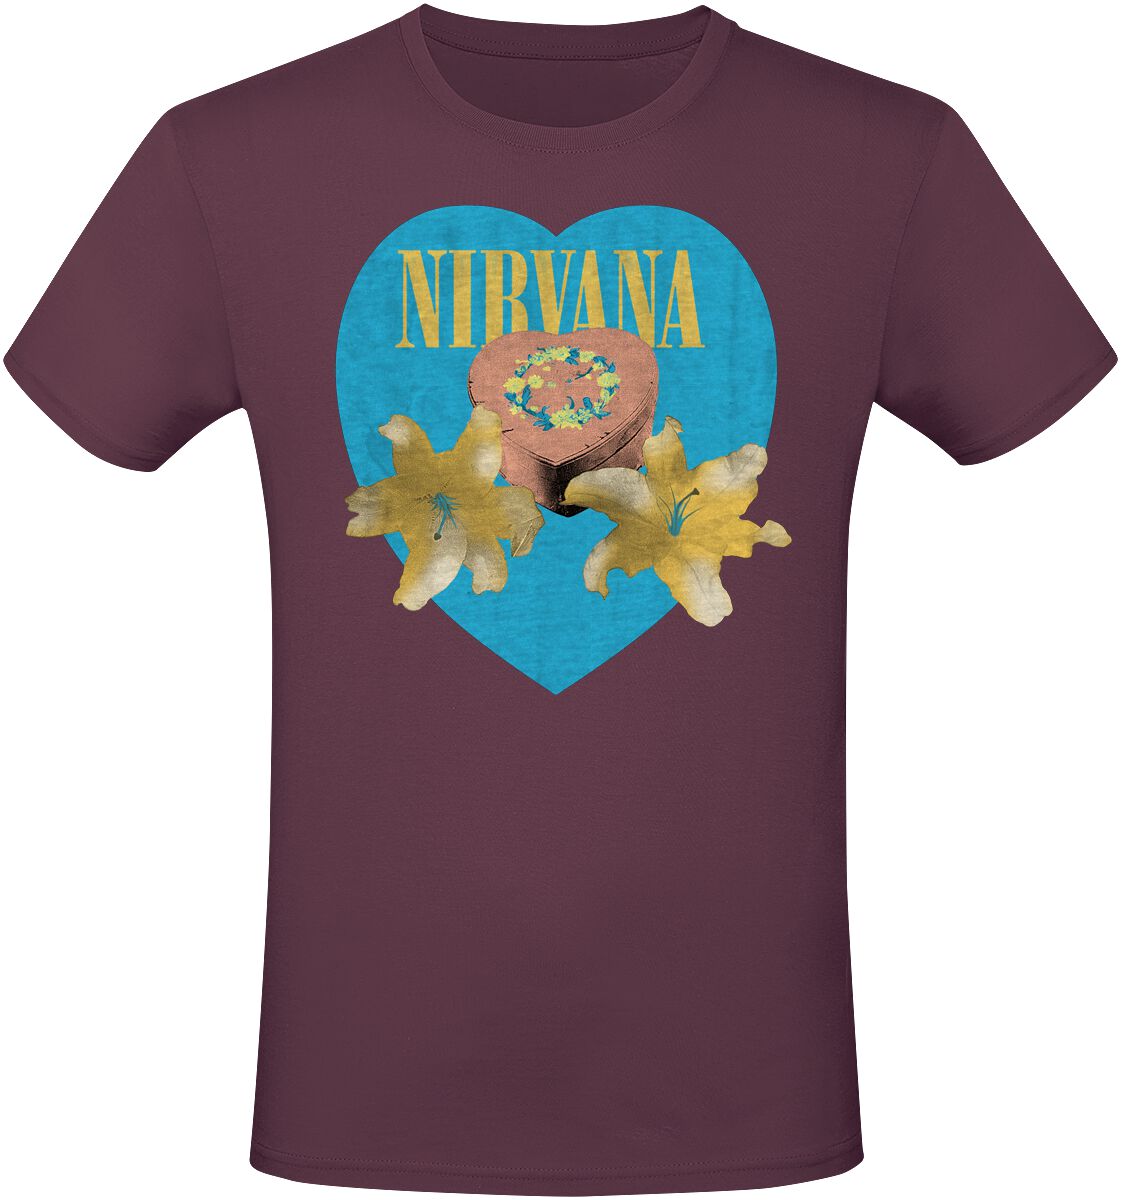 Nirvana T-Shirt - Flower Heart - S bis 3XL - für Männer - Größe S - rot  - Lizenziertes Merchandise!